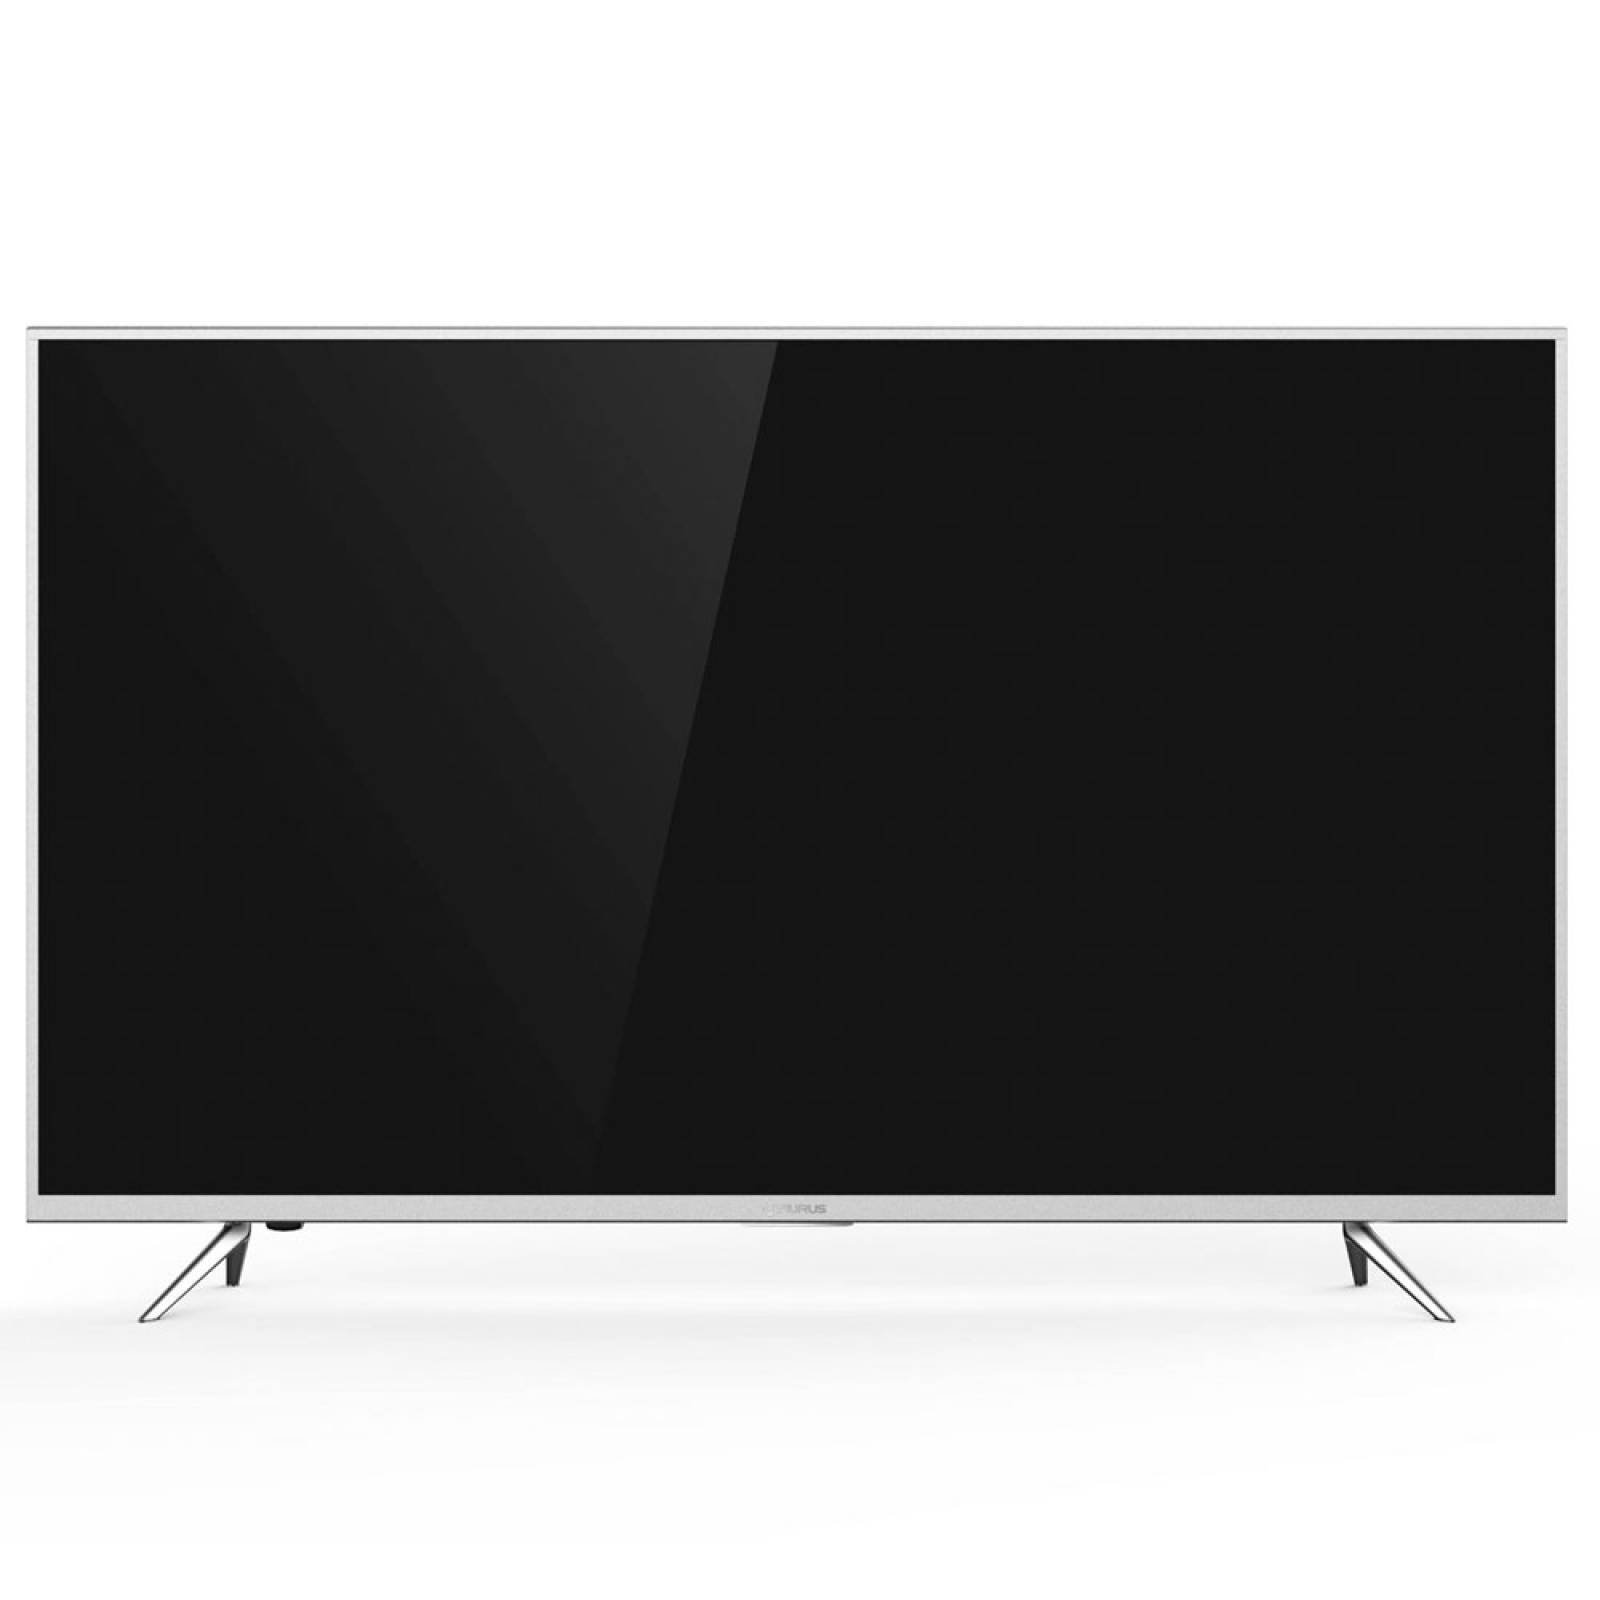 Smart TV Pantalla 4K Led 55 pulgadas 5514-EMUHDS Aurus